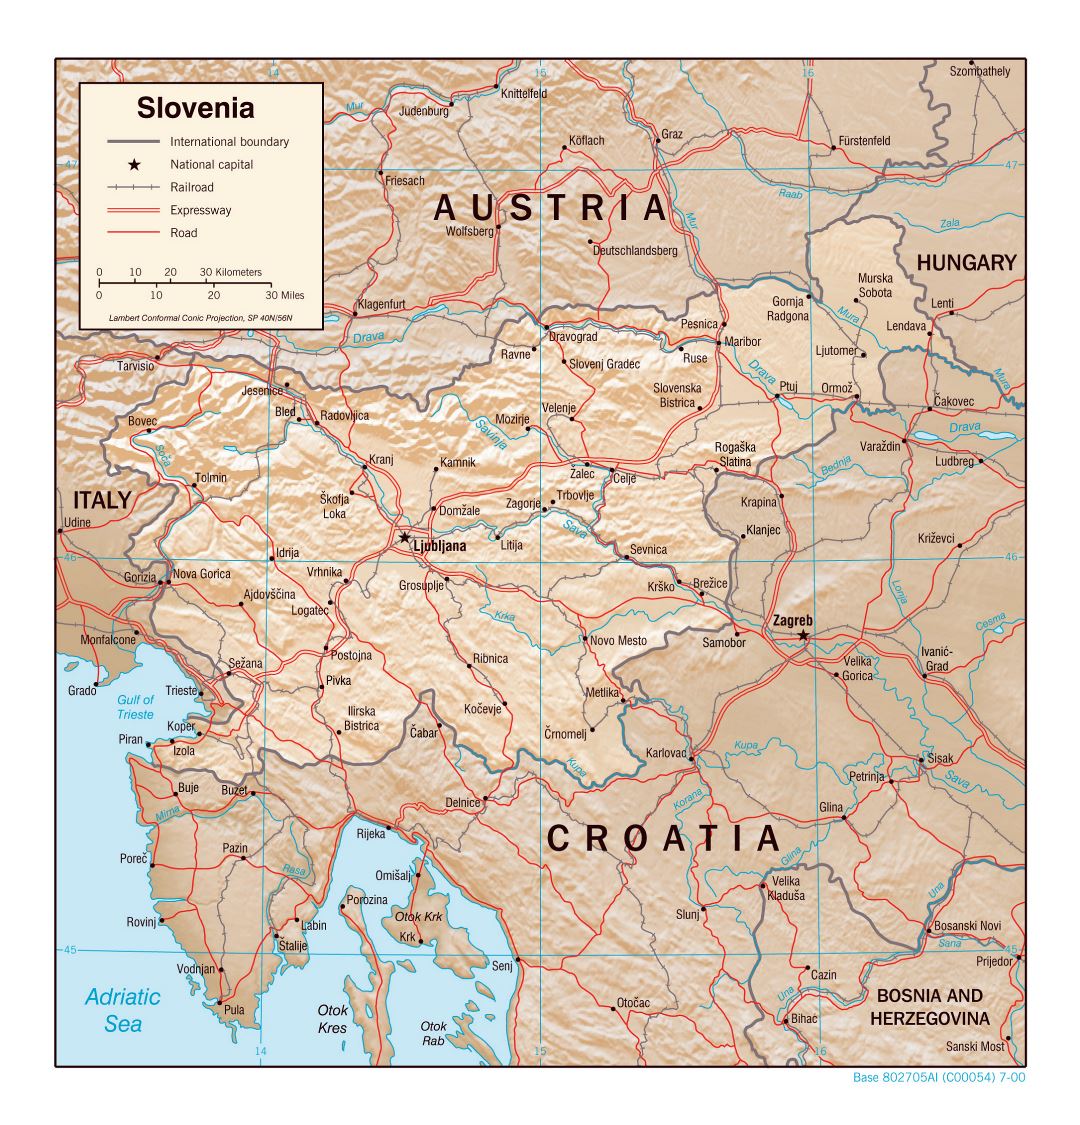 Grande detallado mapa político de Eslovenia con relieve, carreteras, ferrocarriles y ciudades principales - 2000